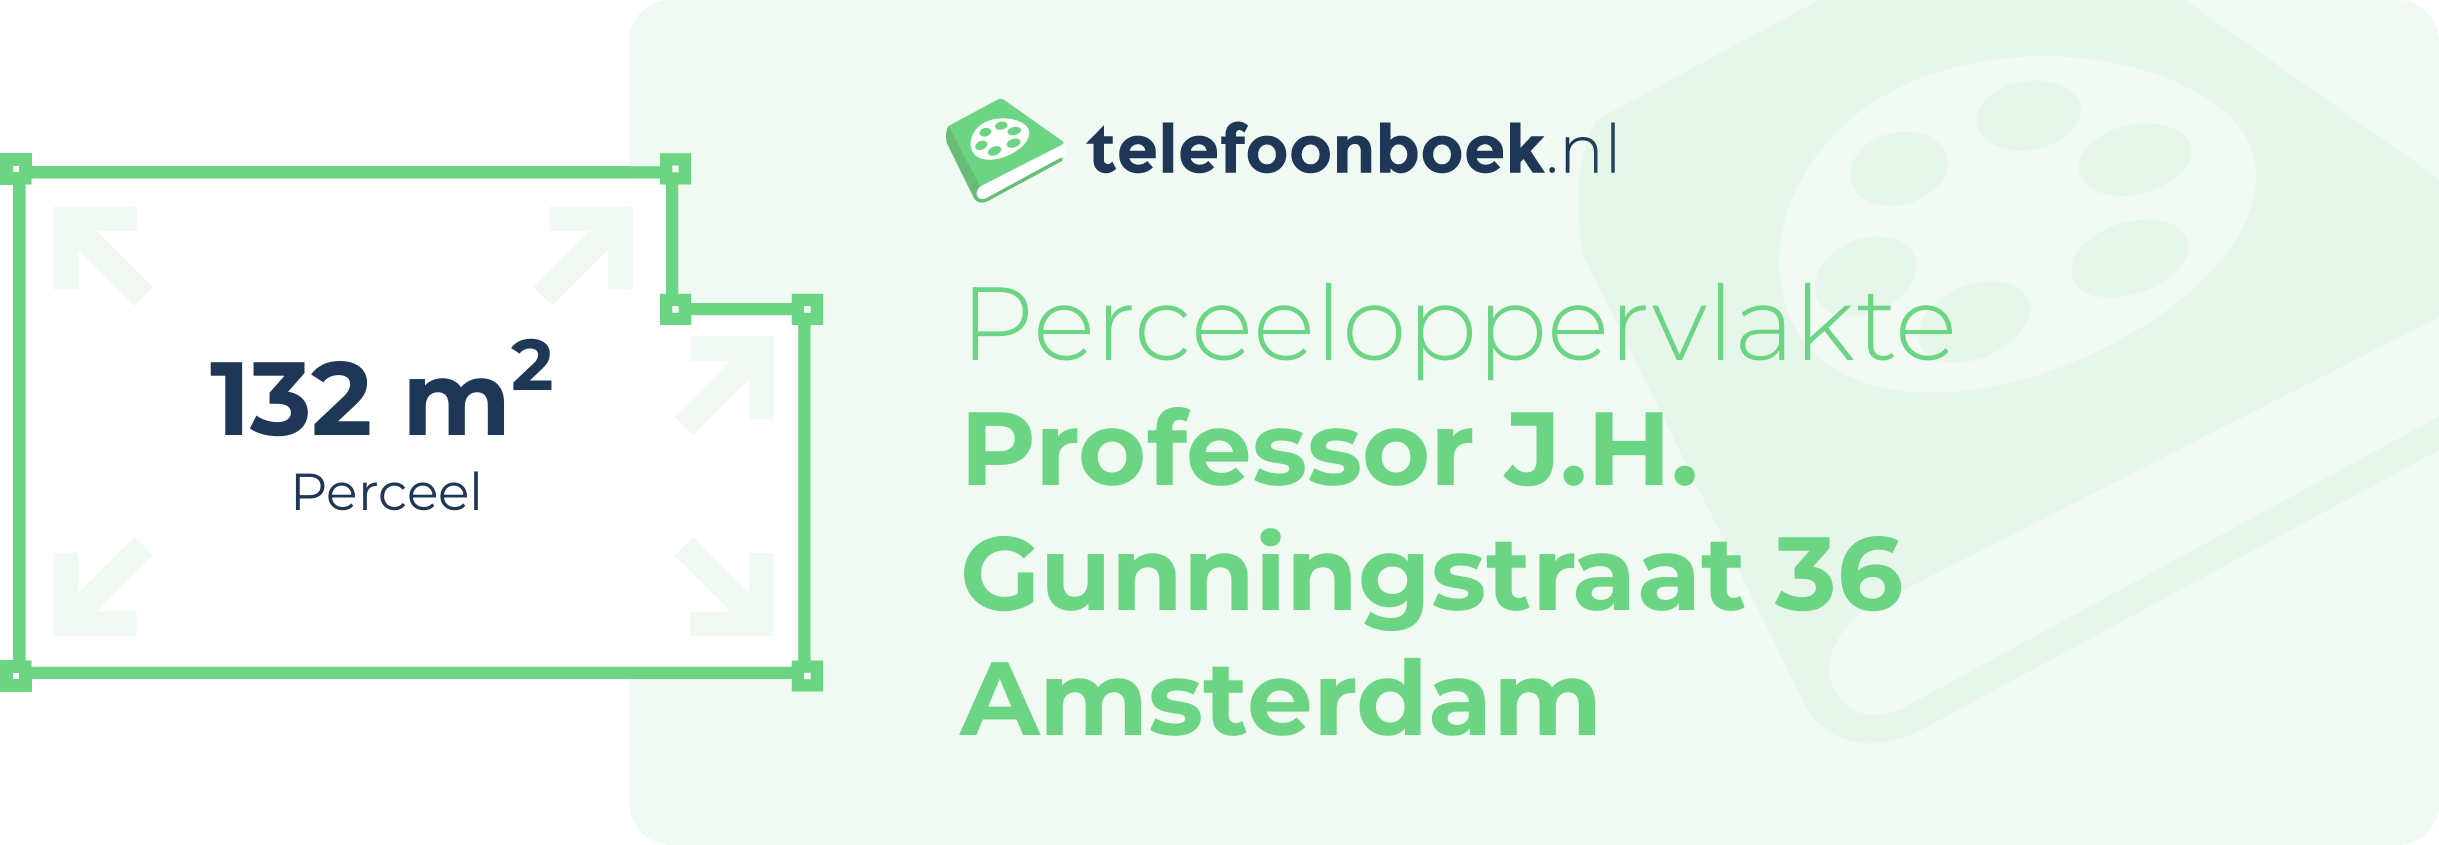 Perceeloppervlakte Professor J.H. Gunningstraat 36 Amsterdam